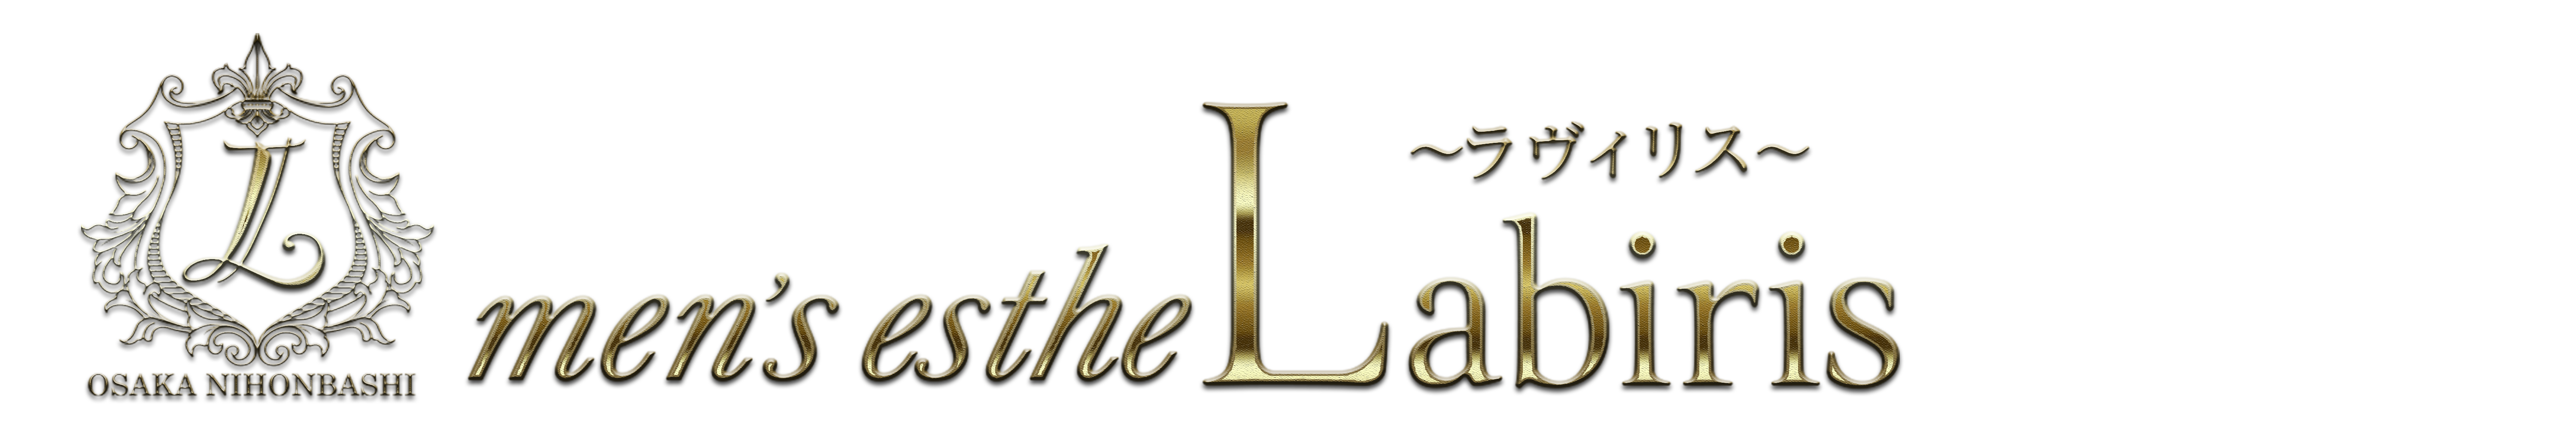 Labiris(ラヴィリス)公式サイト